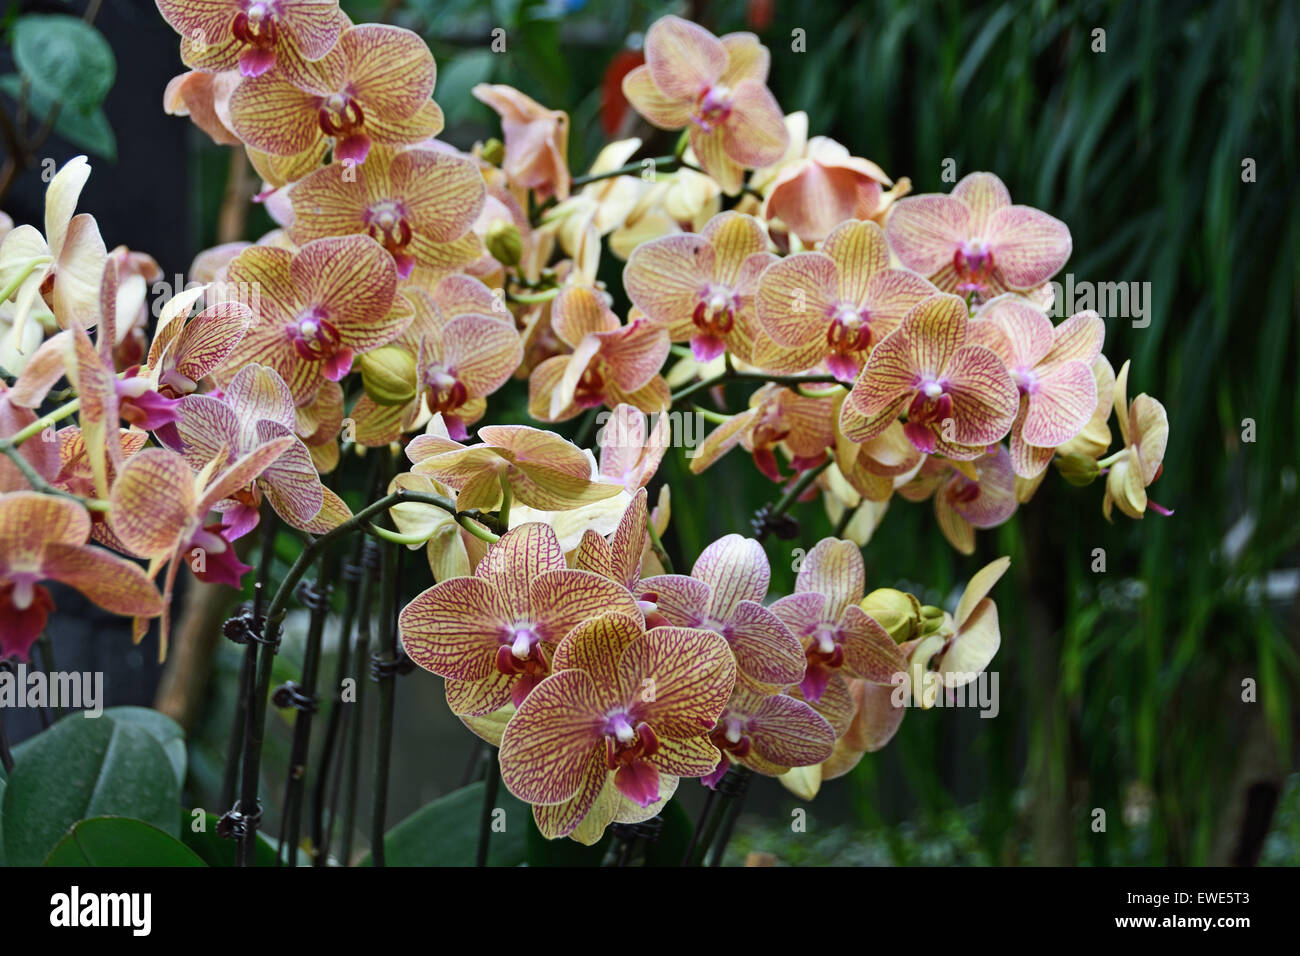 Chine Shanghai orchidées orchidées fleurs Chine Shanghai orchidée Shanghai jardin botanique Xuhui District Chine Chinois Banque D'Images